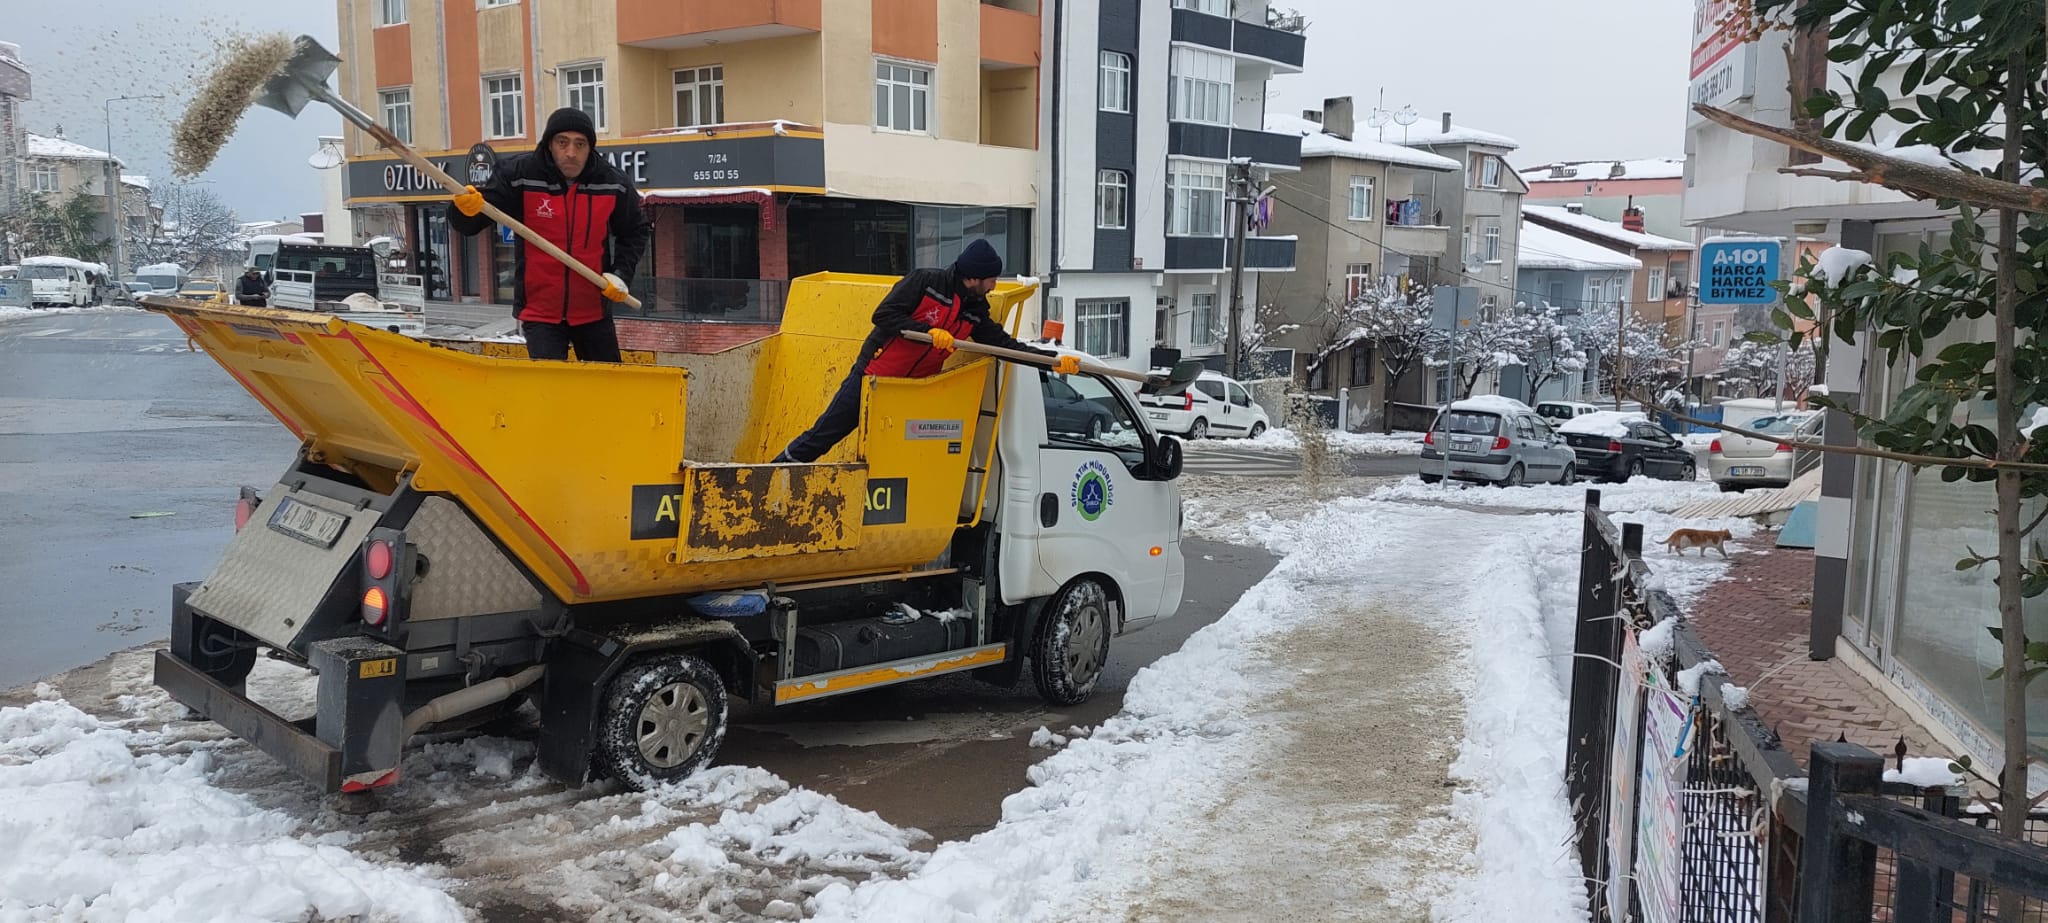 Darıca Belediyesi karla mücadelede vatandaşın yanında